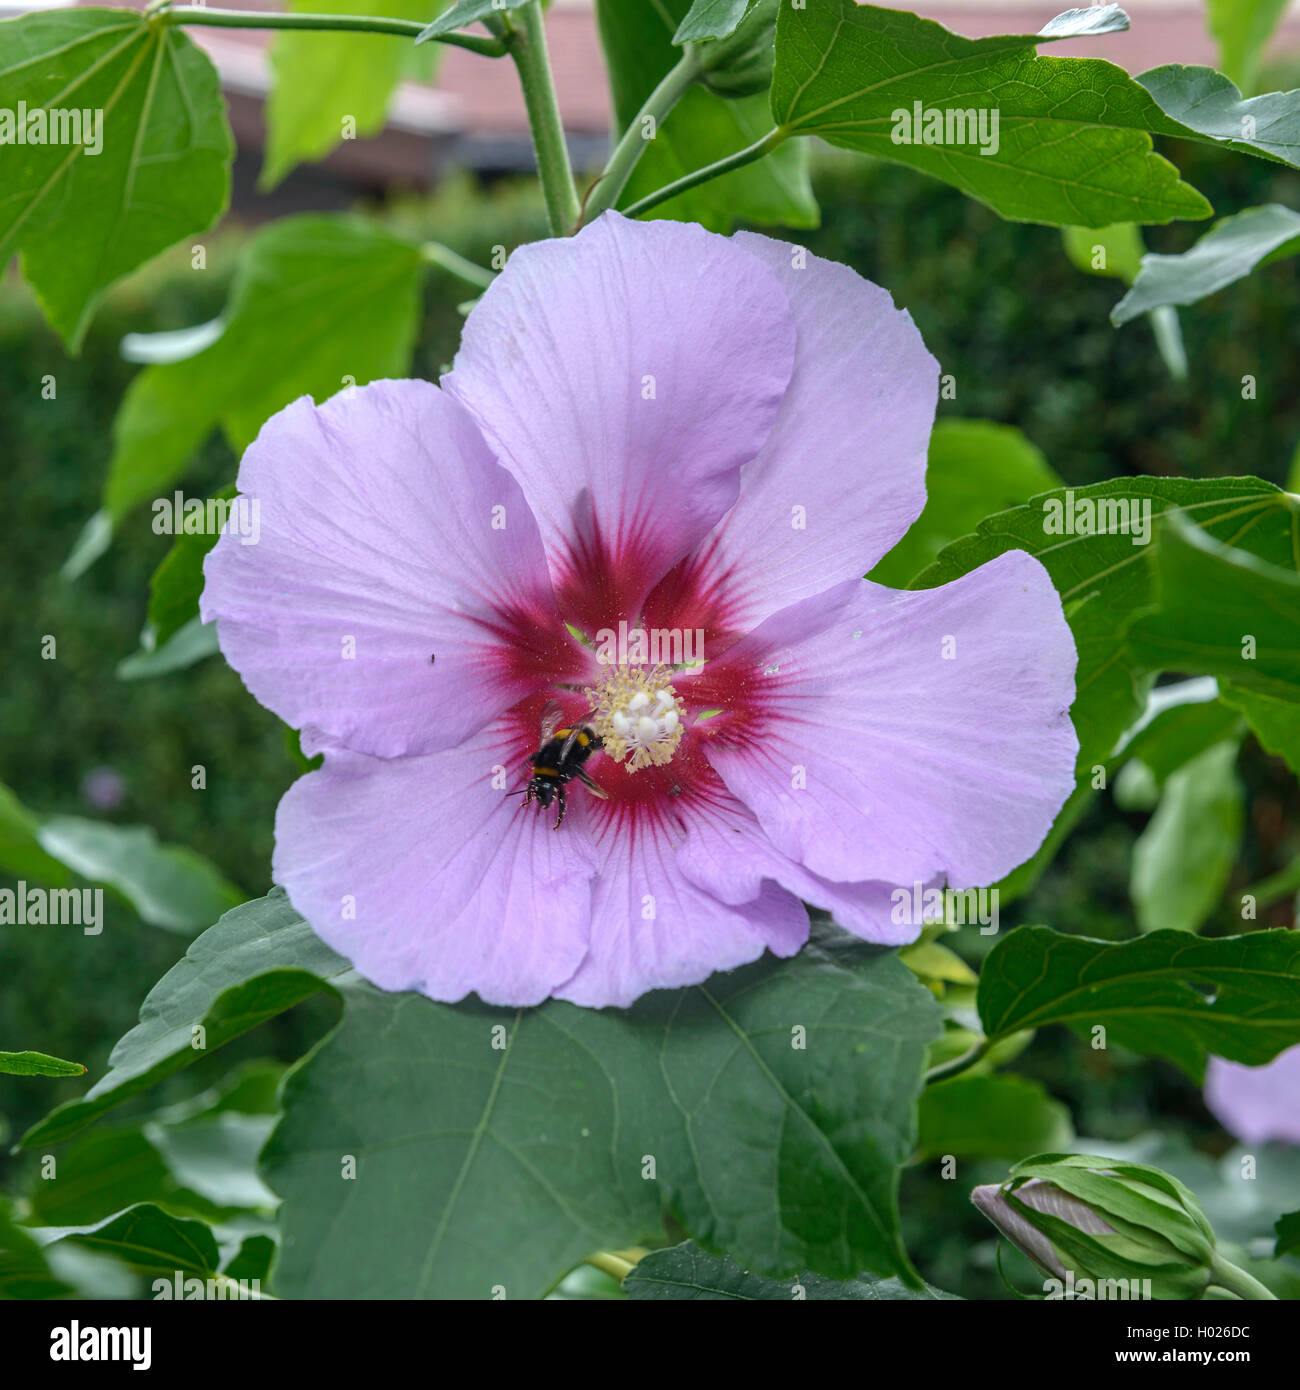 Hibiscus (Hibiscus 'Resi', Hibiscus Resi), cultivar Resi Stock Photo